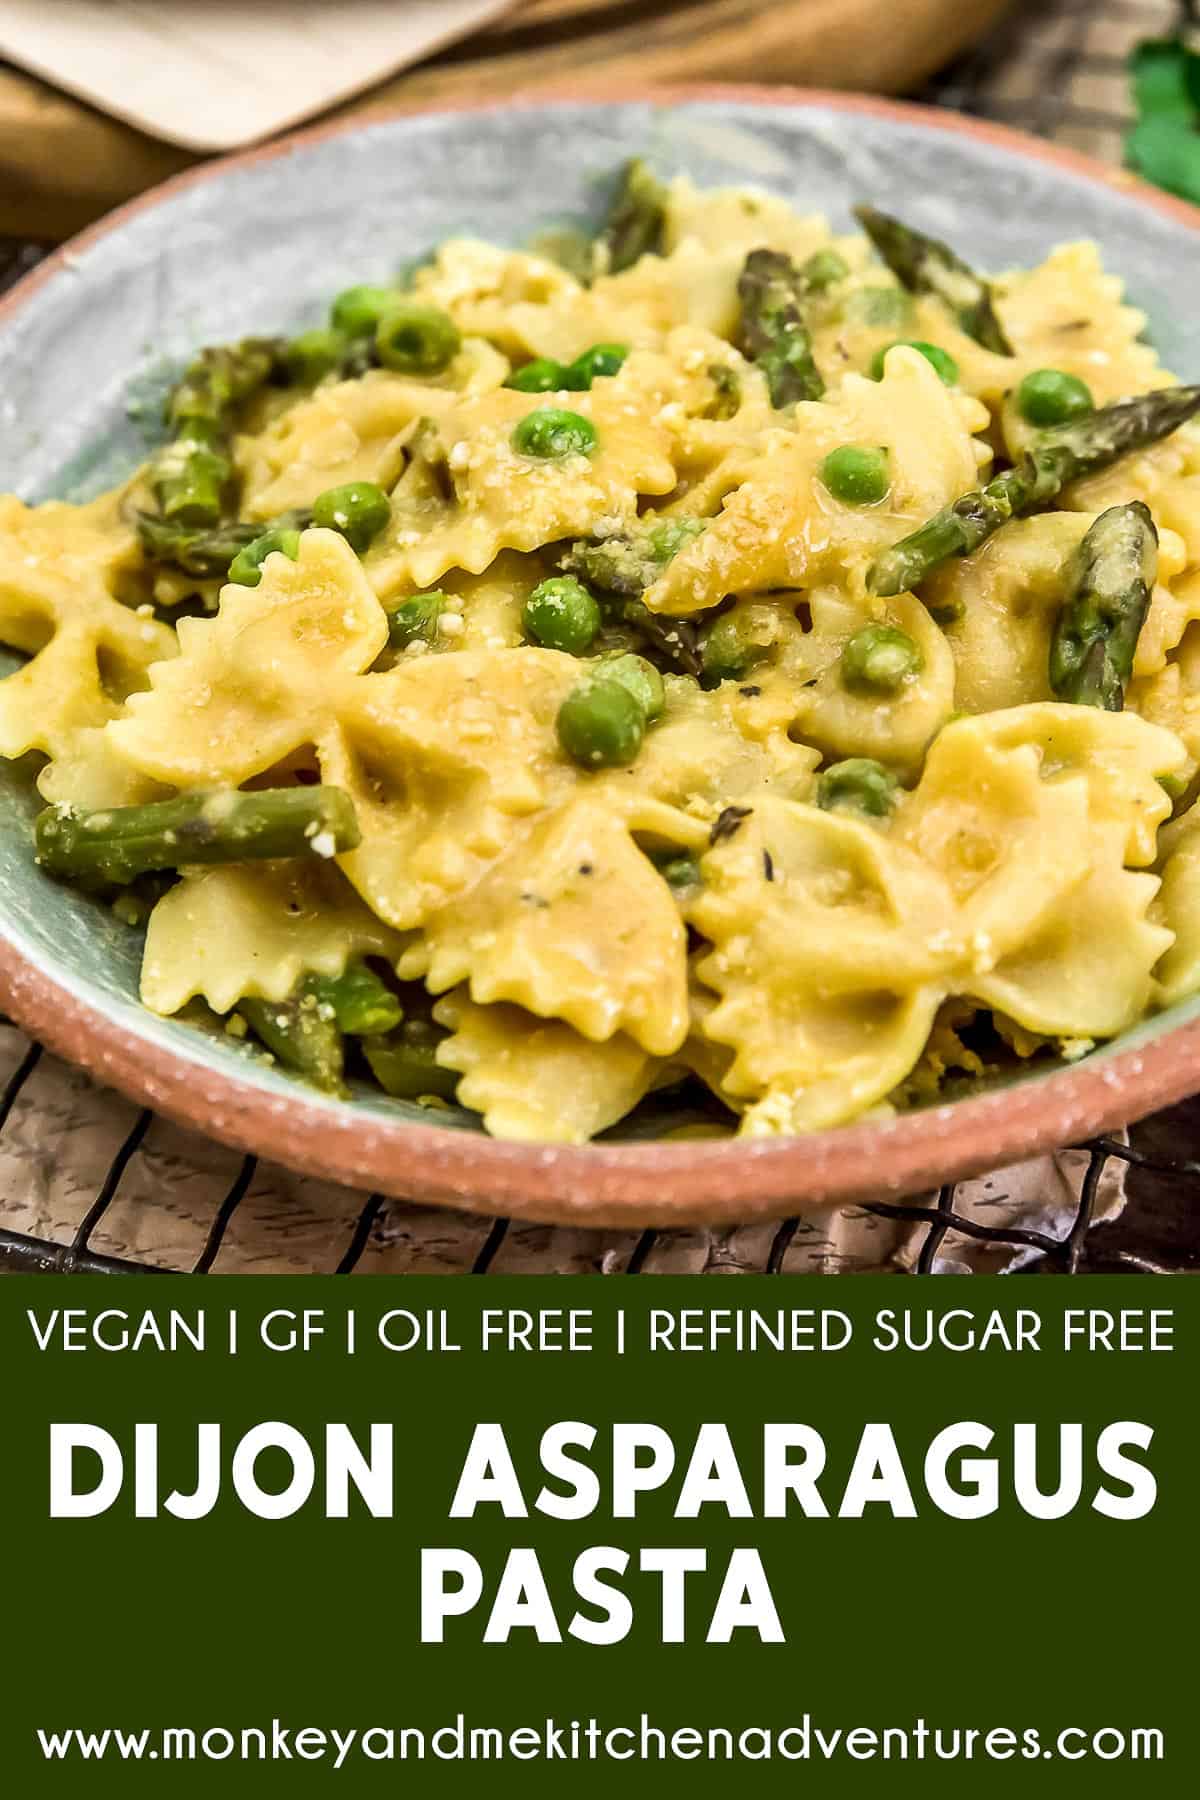 Dijon Asparagus Pasta with text description